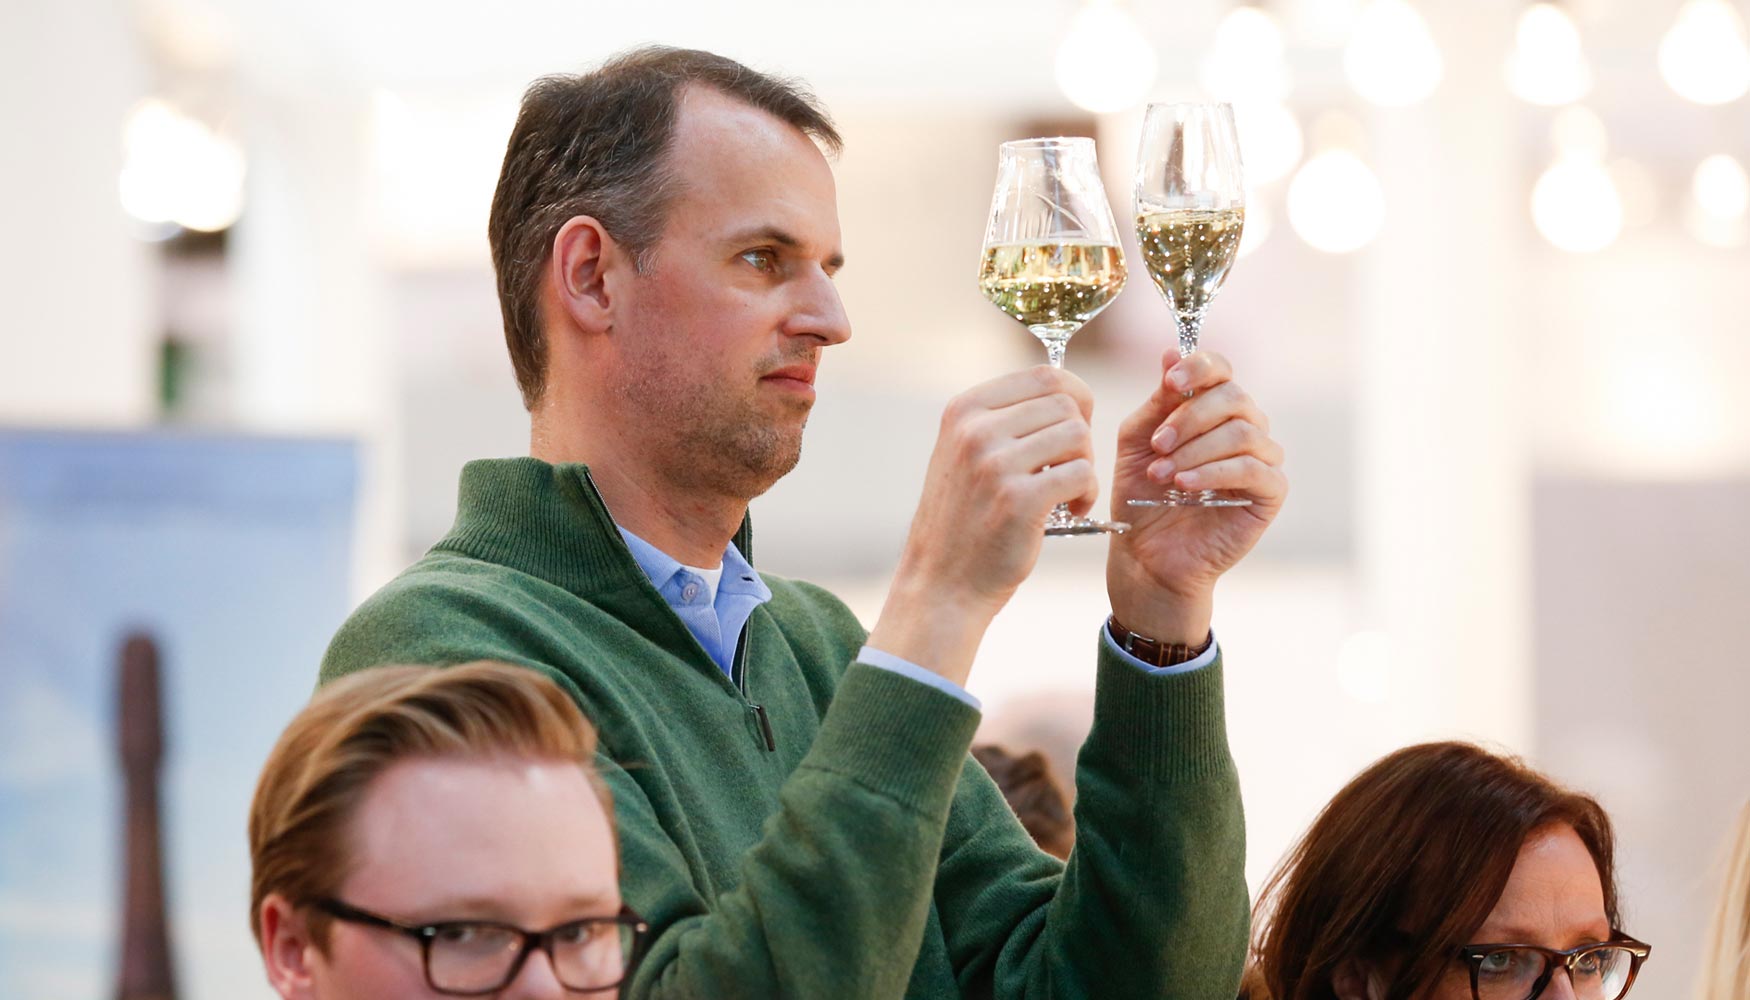 El sumiller es uno de los perfiles profesionales ms abundantes en Prowein por su importante tarea como experto en vino